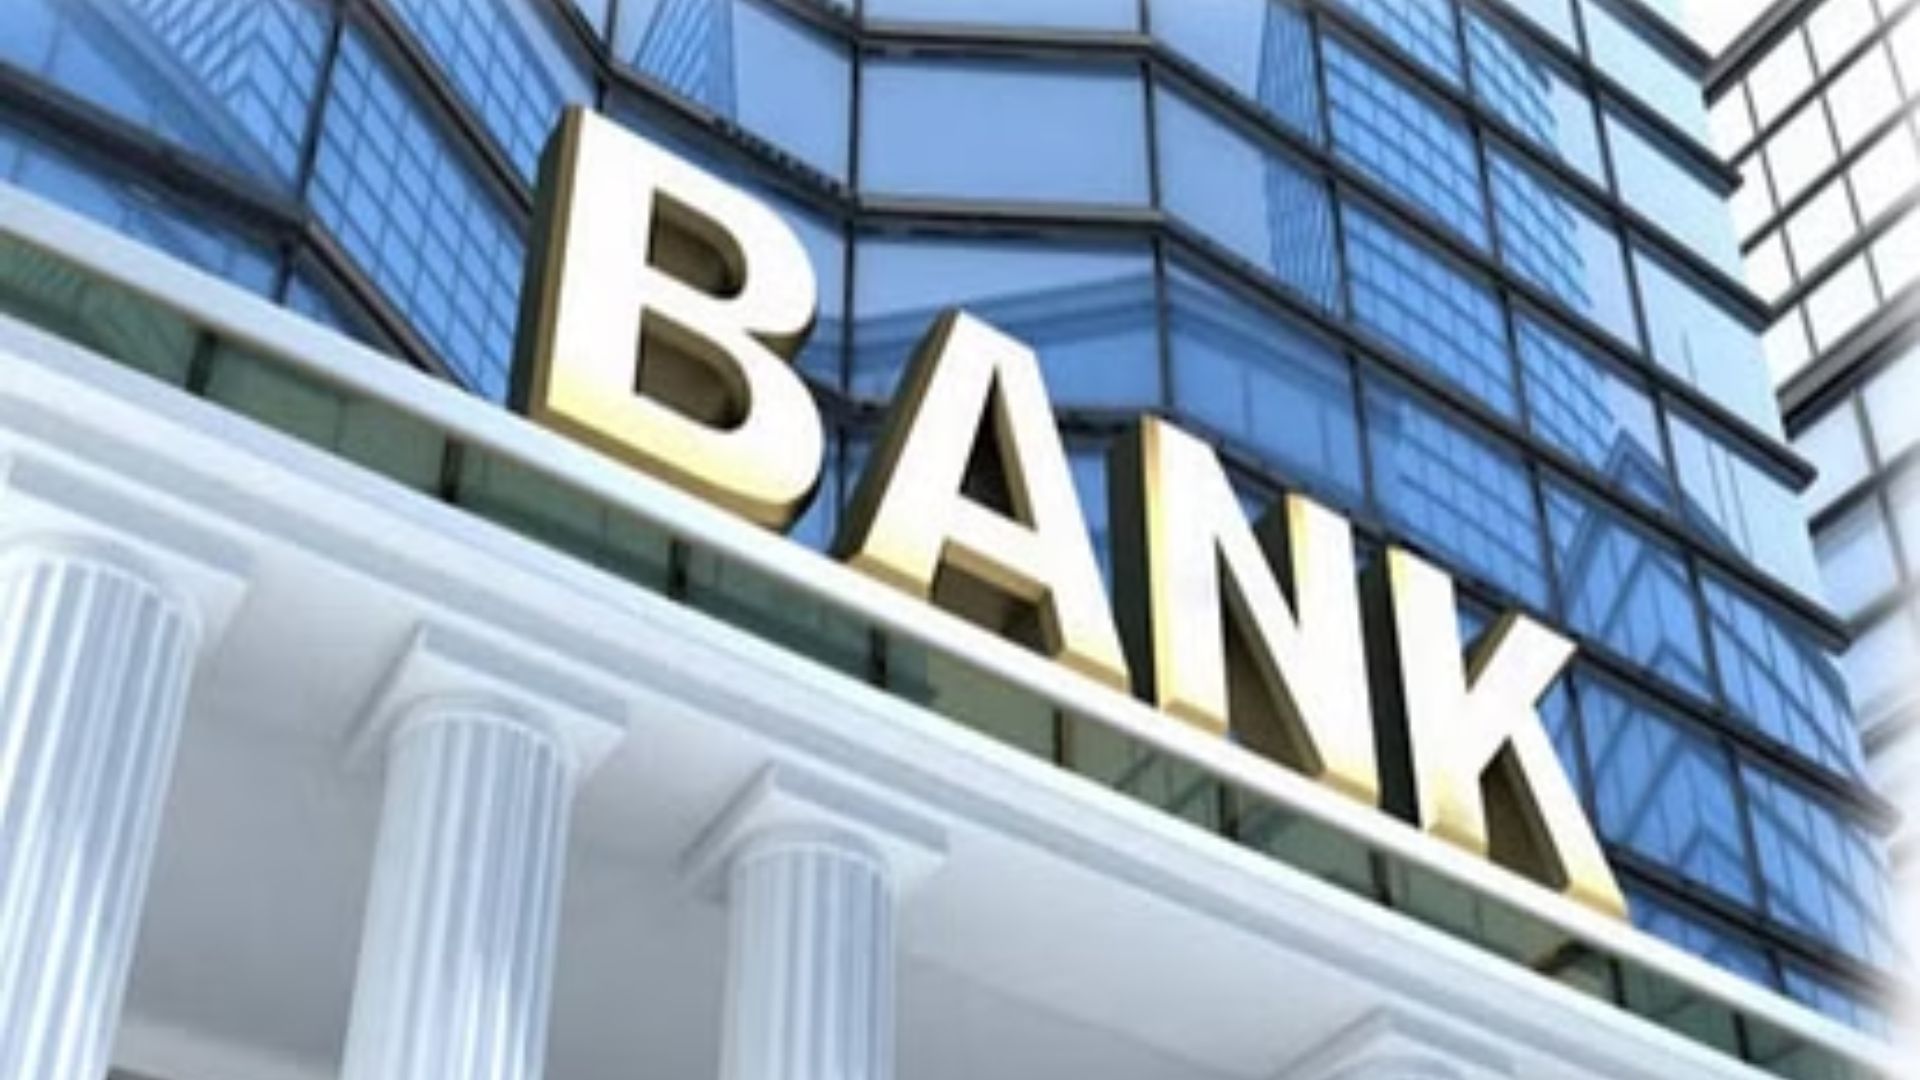 बरेली: बैंकिंग कर्मचारियों की नजर देश में जारी उथल-पुथल पर, जनिए क्या बोले बैंककर्मी?